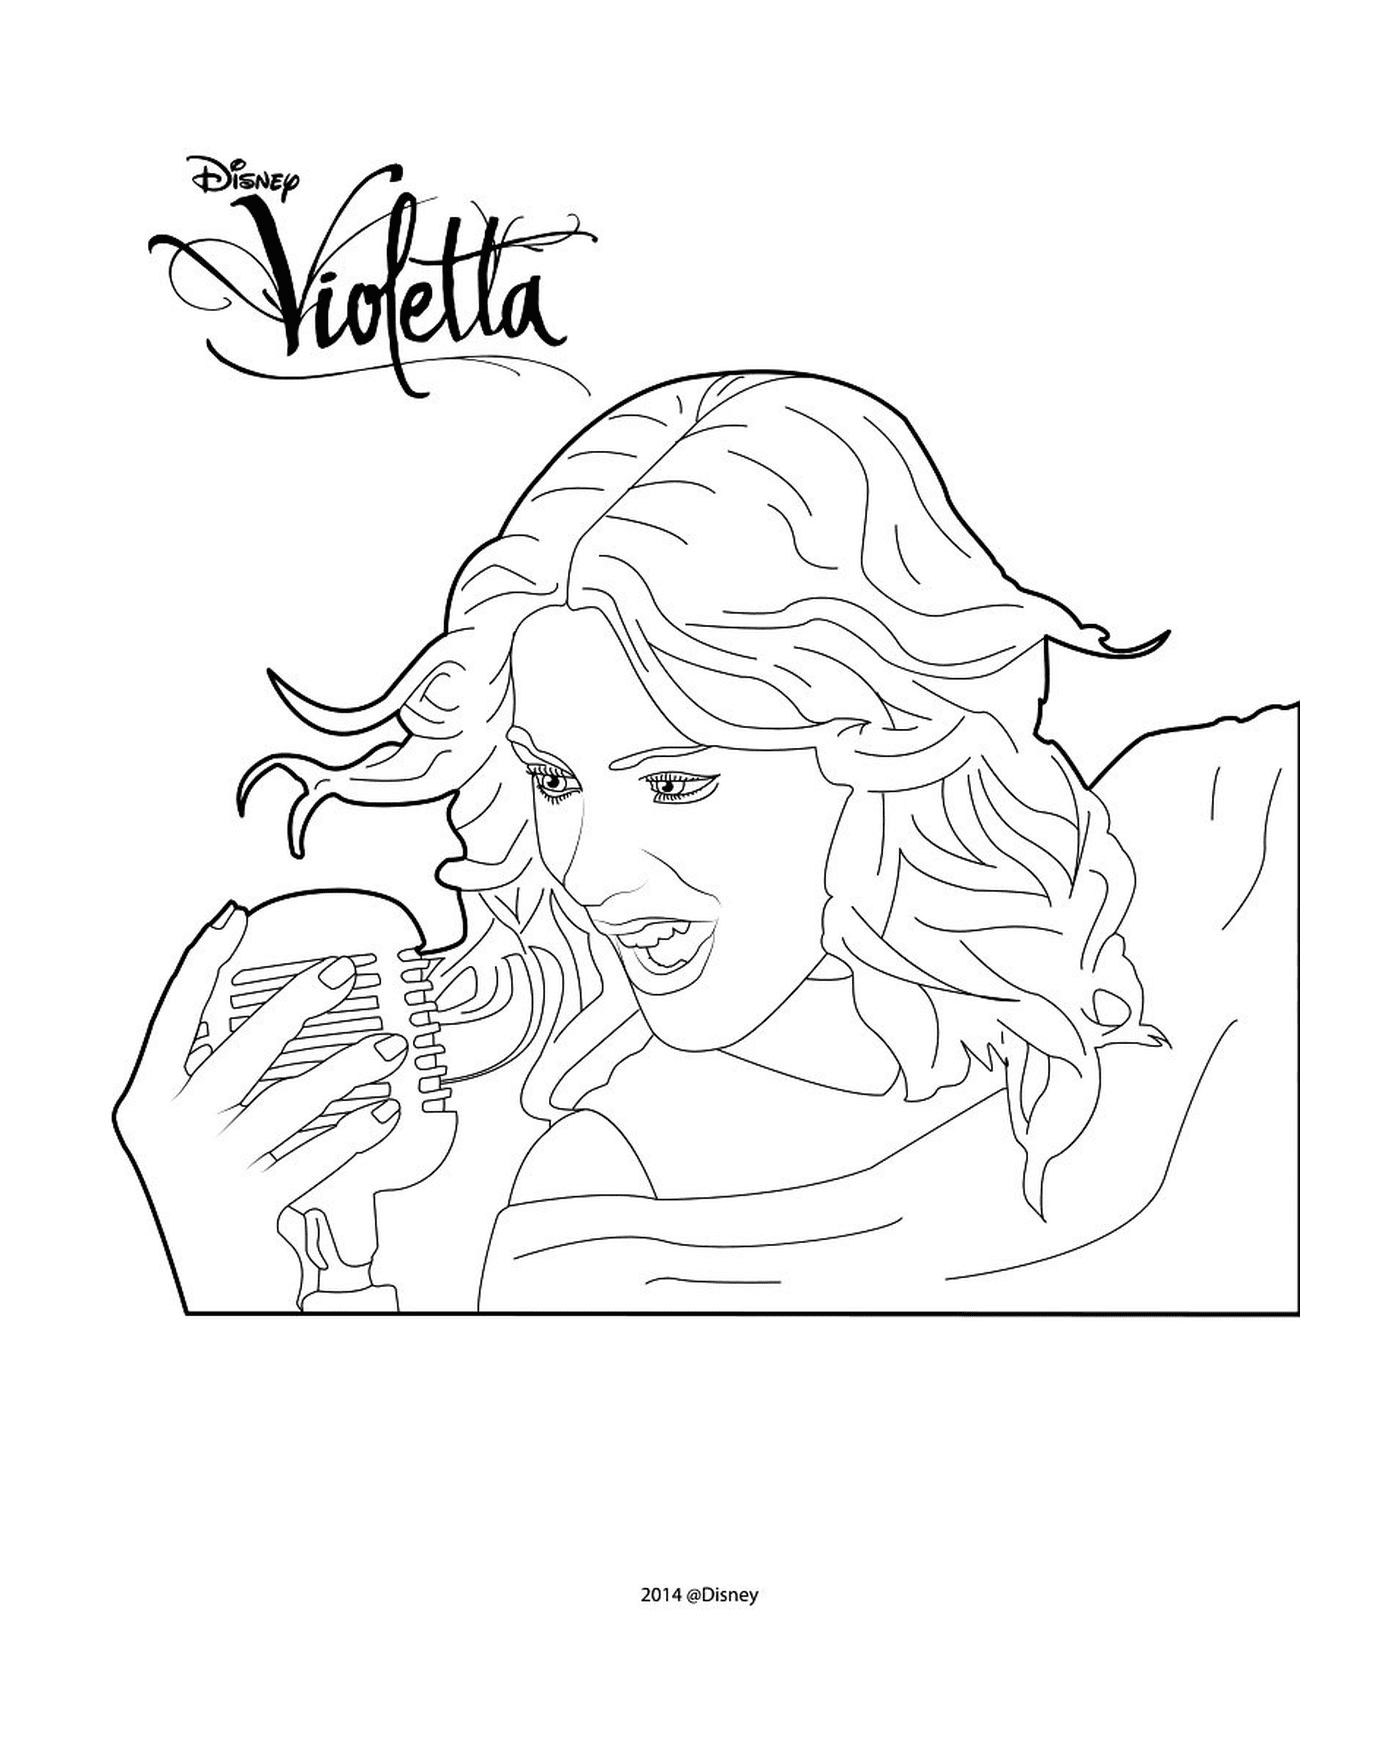  Violetta canta 